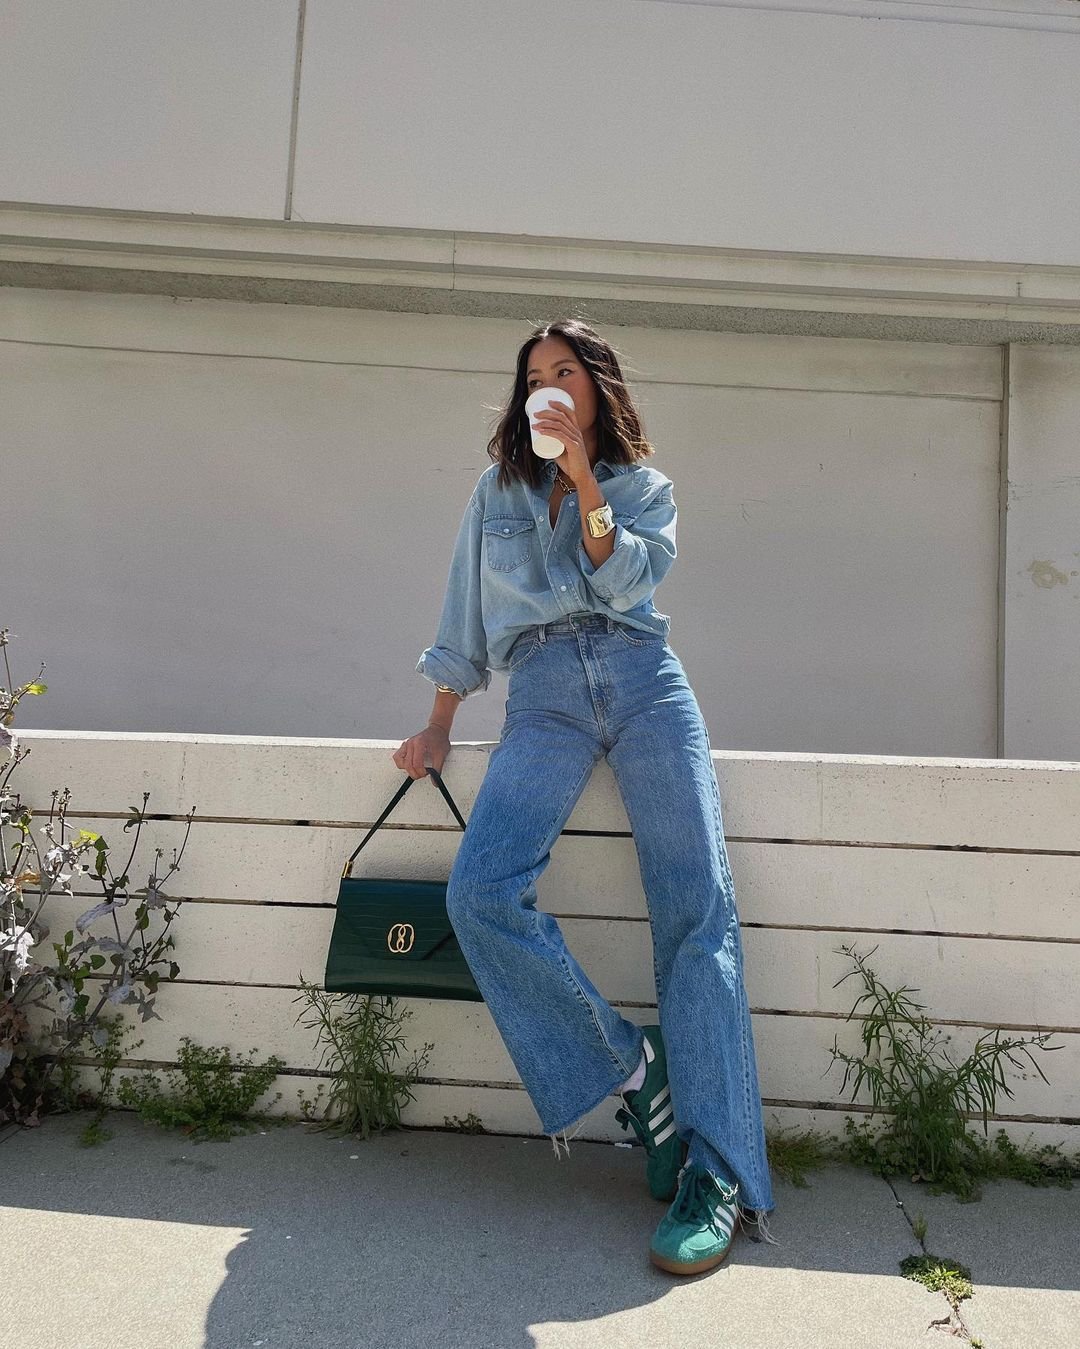 It girls - blusas tendência, calça jeans, all jeans - blusas tendência - Inverno - Street Style  - https://stealthelook.com.br